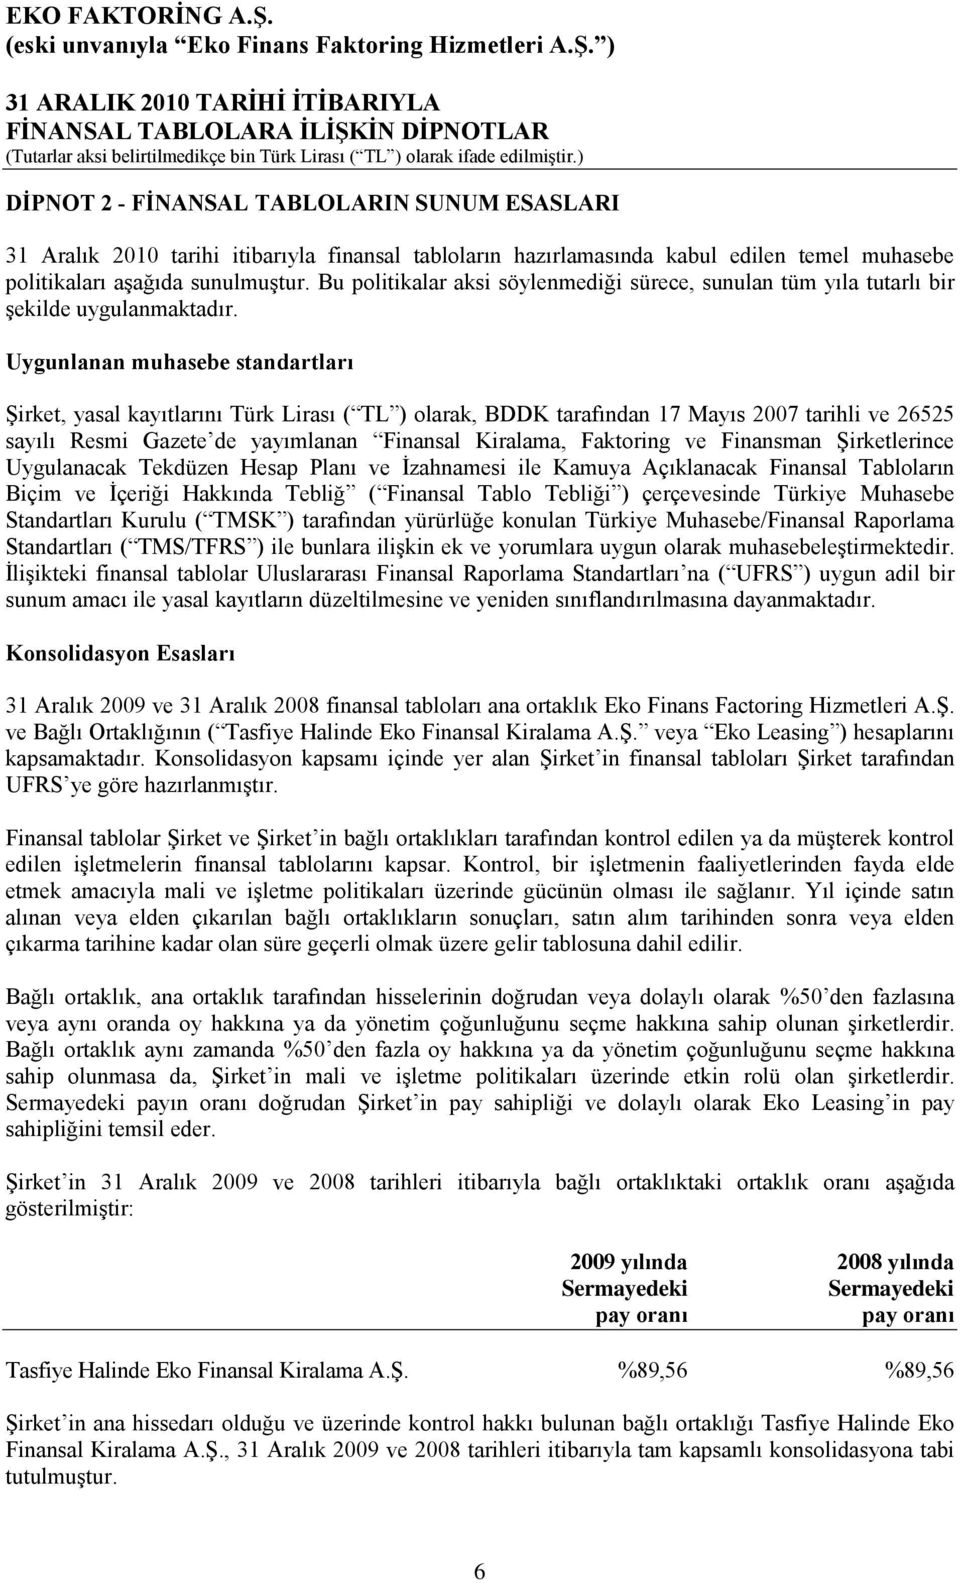 Uygunlanan muhasebe standartları Şirket, yasal kayıtlarını Türk Lirası ( TL ) olarak, BDDK tarafından 17 Mayıs 2007 tarihli ve 26525 sayılı Resmi Gazete de yayımlanan Finansal Kiralama, Faktoring ve